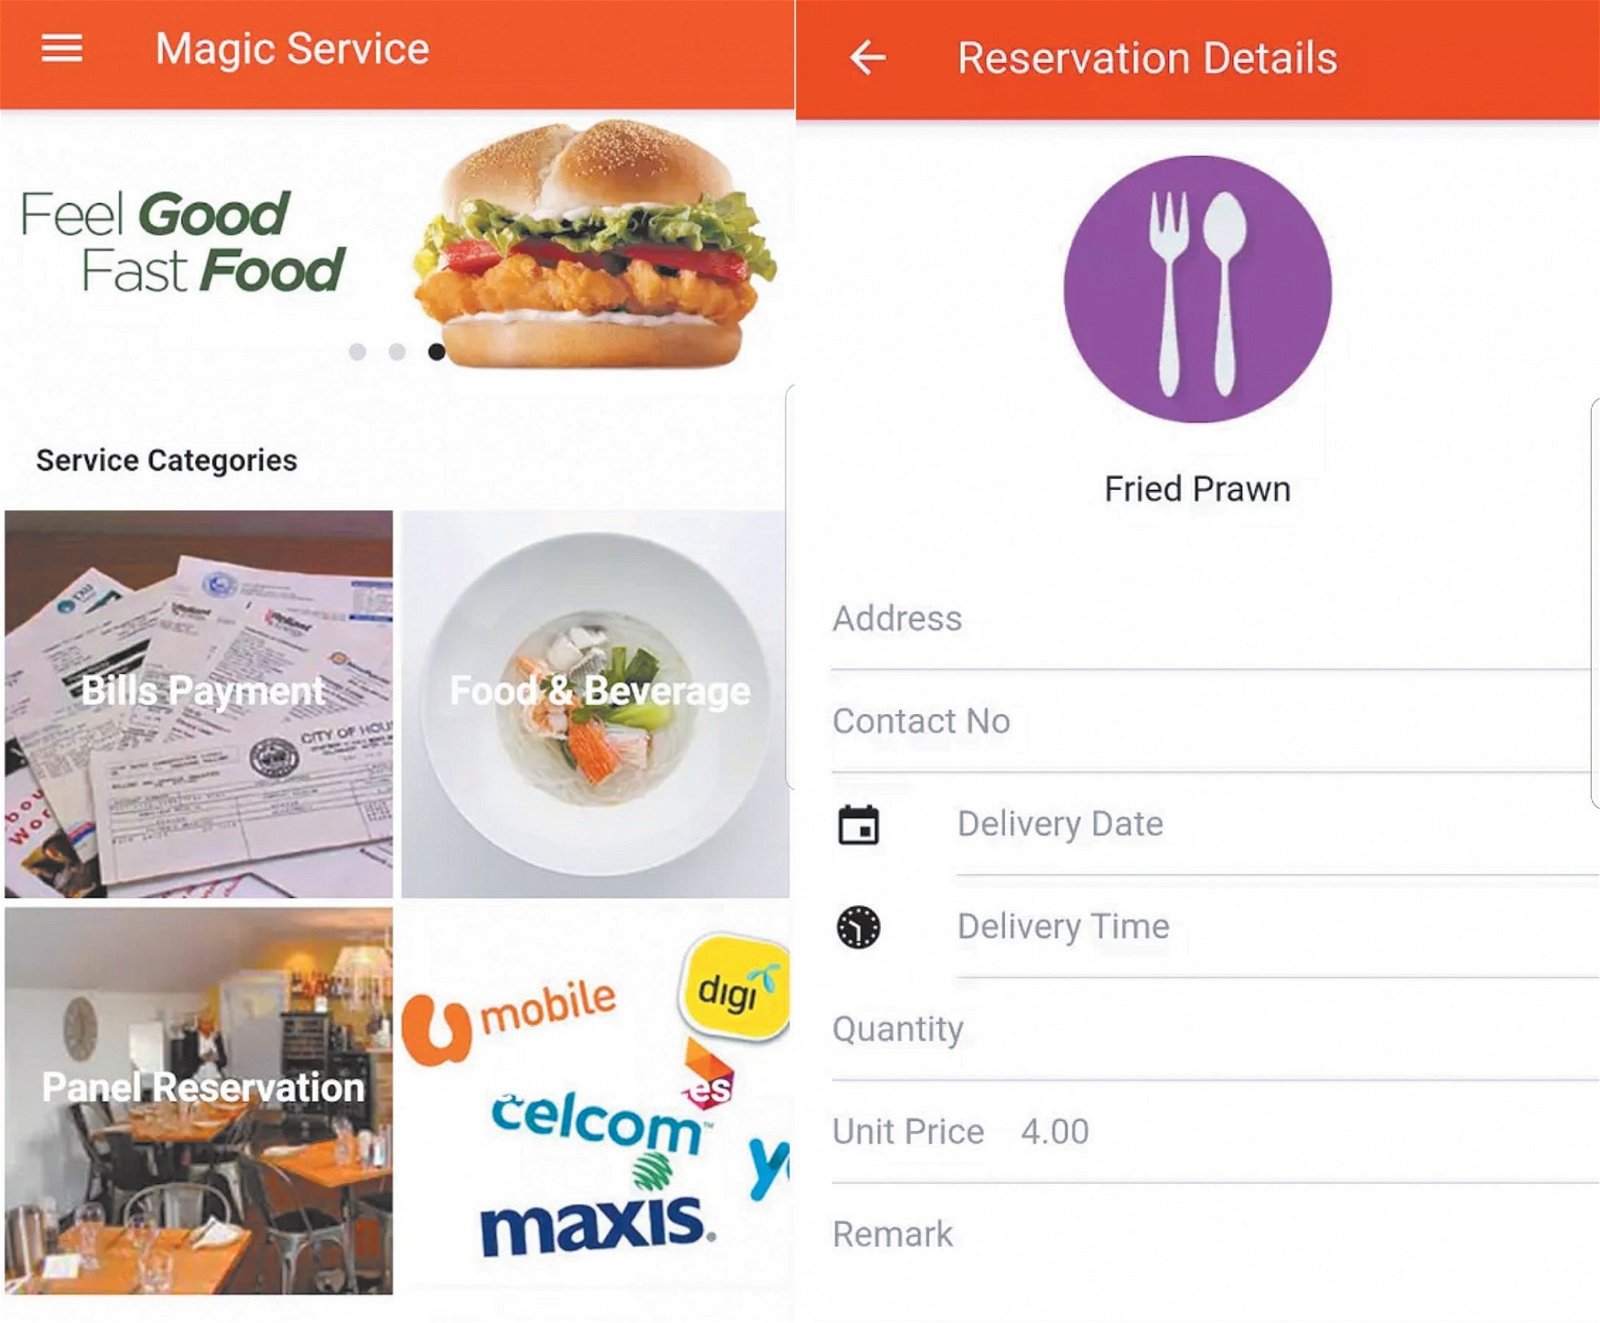 民众可透过Magic Service的手机应用程式，订购各种服务，包括缴交费用及外送食物等